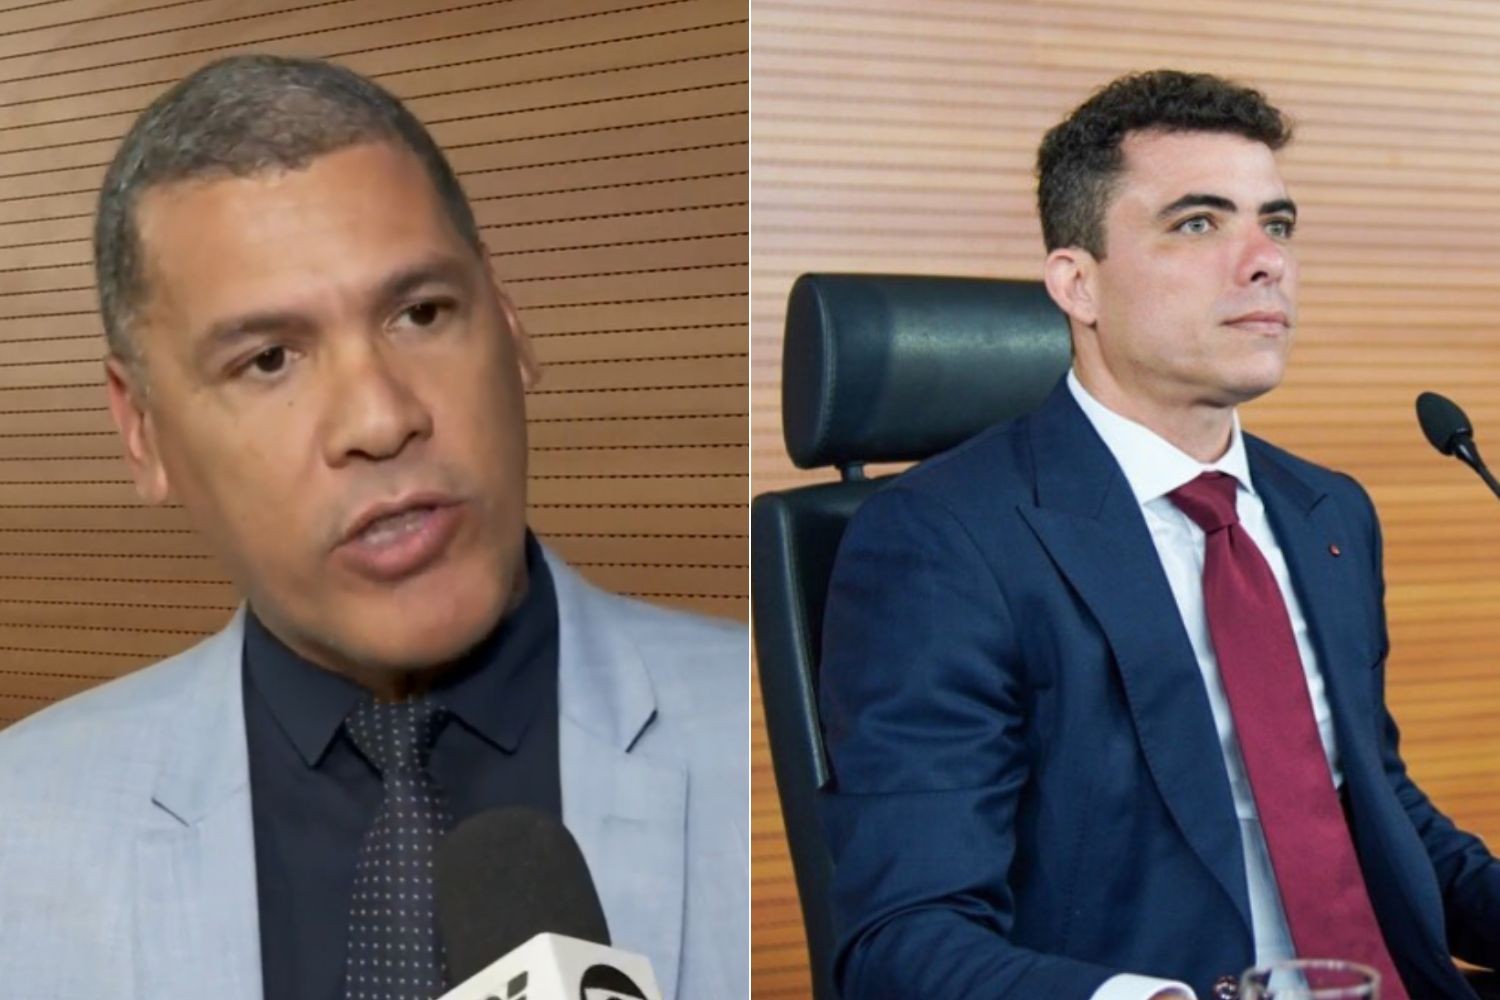 Vereador e advogado de André do Rap são presos no litoral de SP em operação contra grupo ligado ao PCC suspeito de fraudar licitações